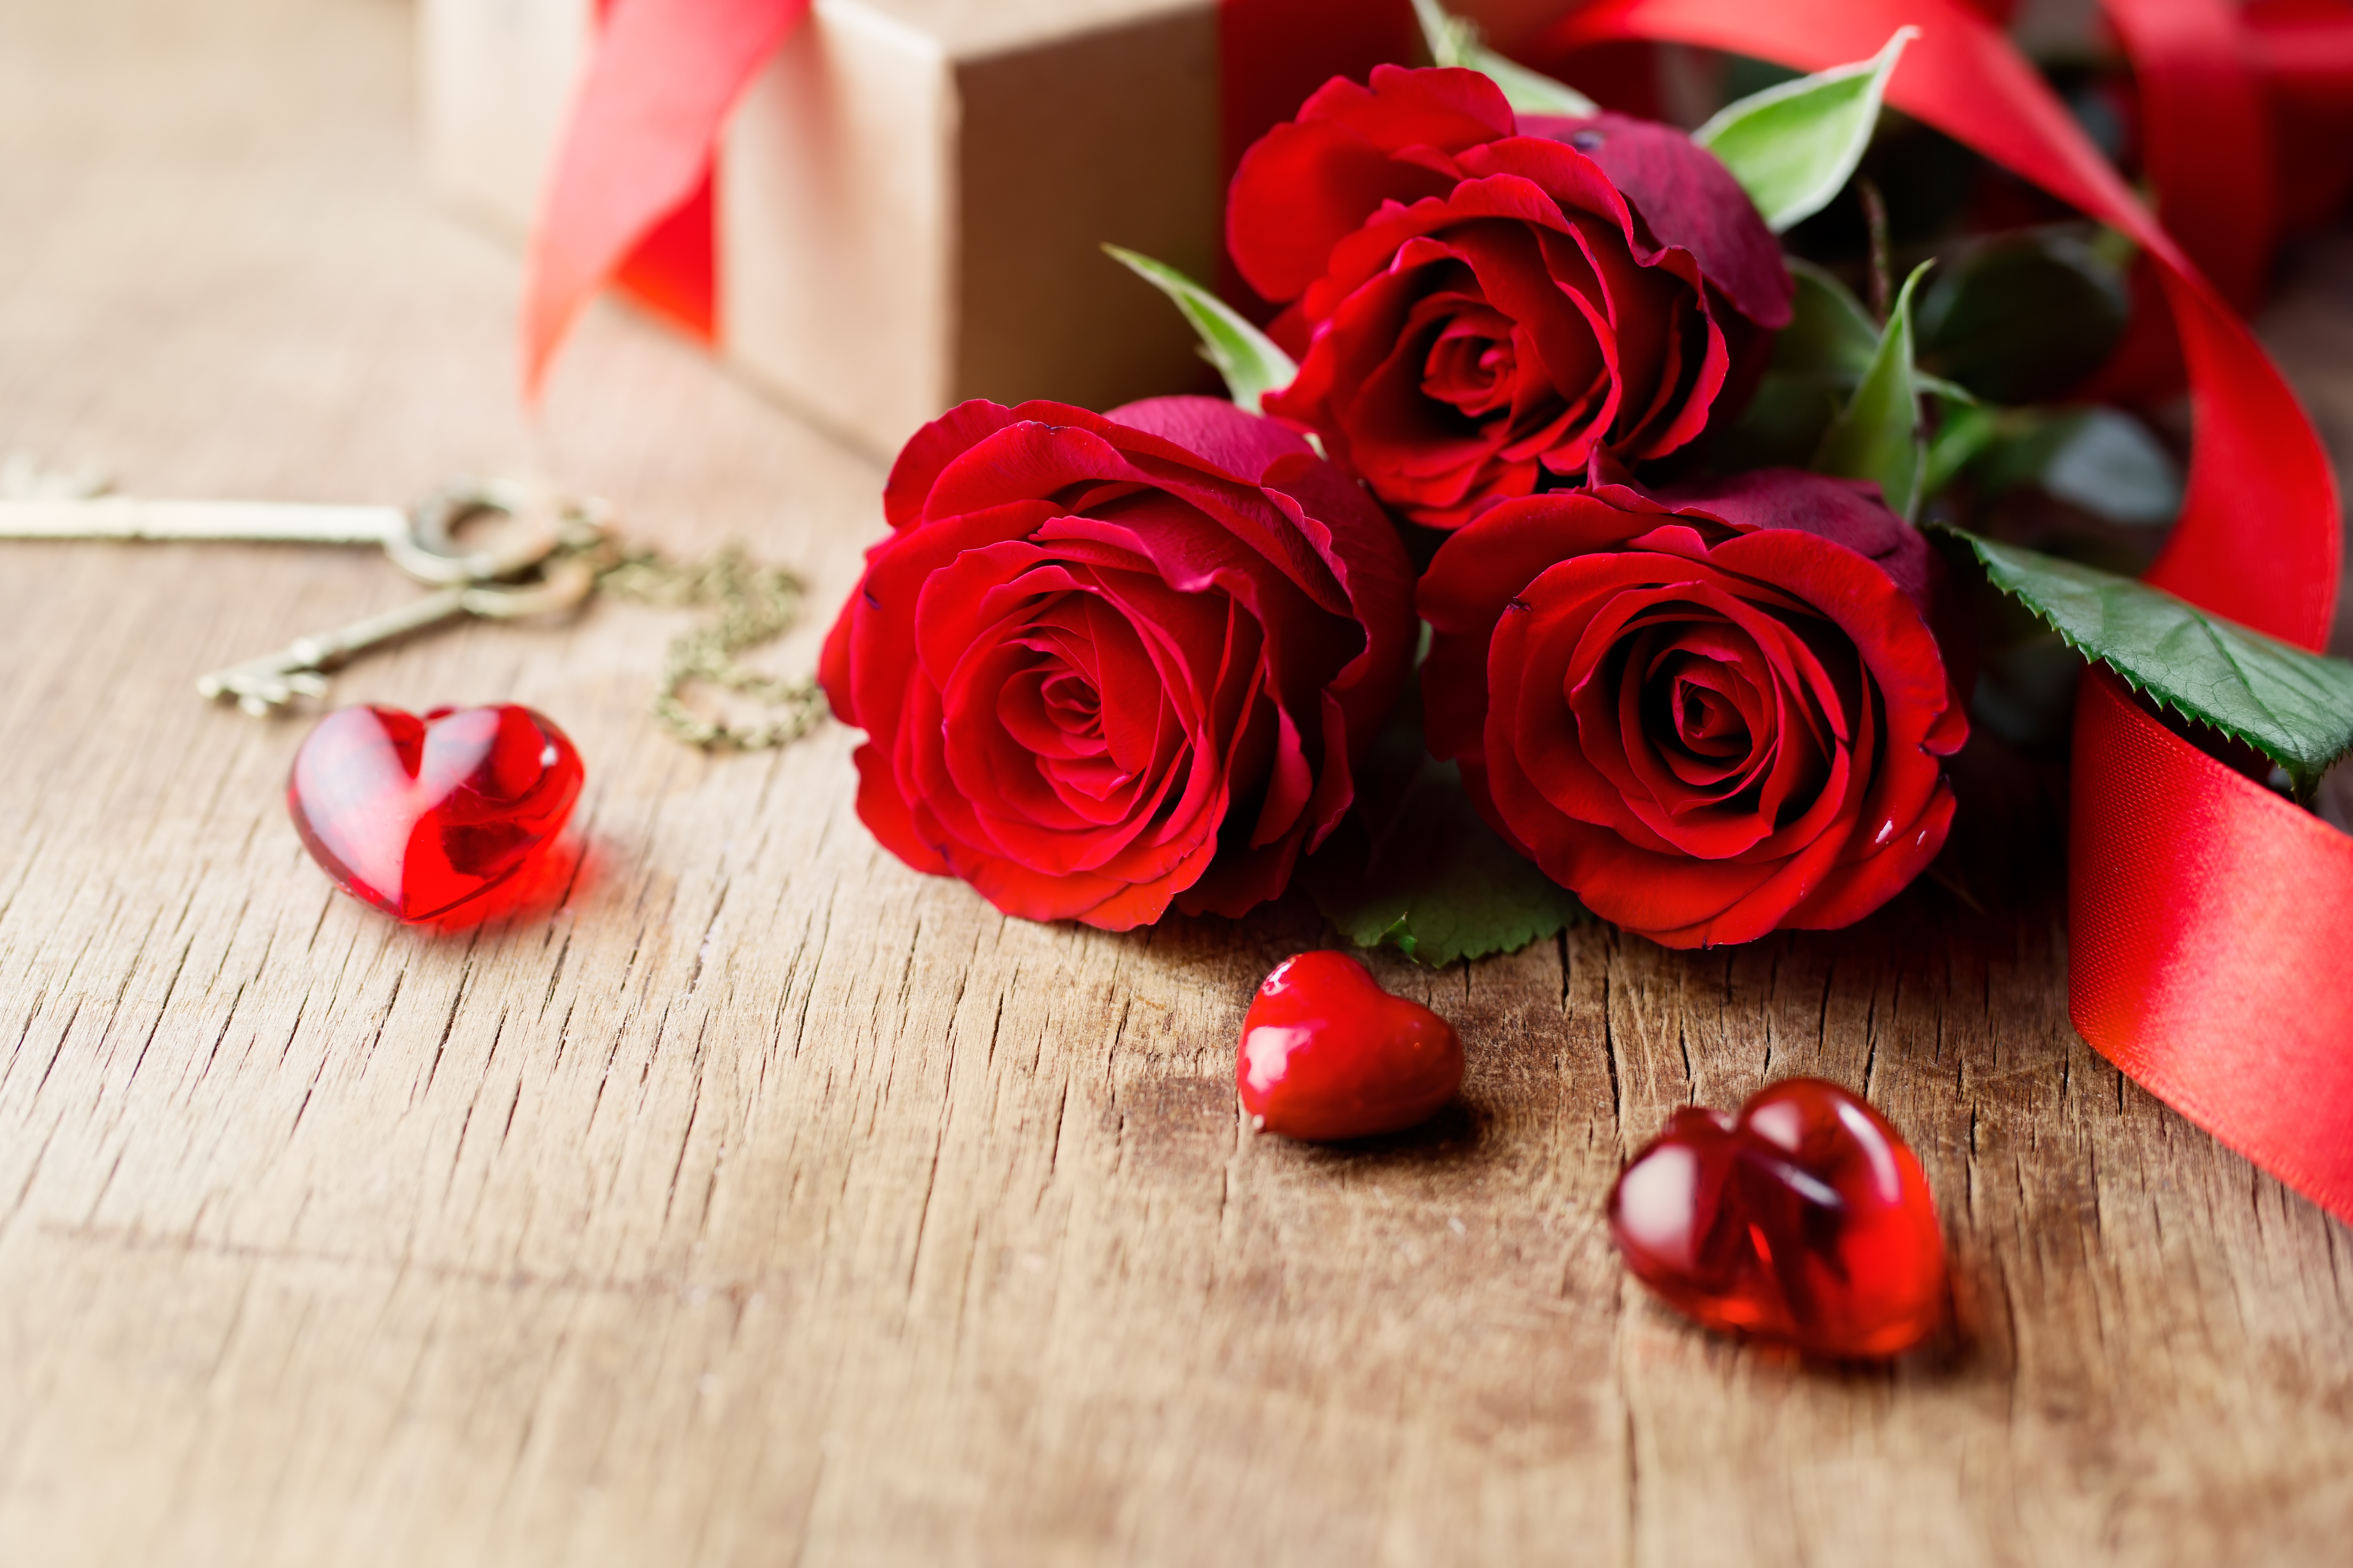 Скачать обои бесплатно Натюрморт, Роза, Сердце, Красная Роза, День Святого Валентина, Праздничные, Красный Цветок картинка на рабочий стол ПК